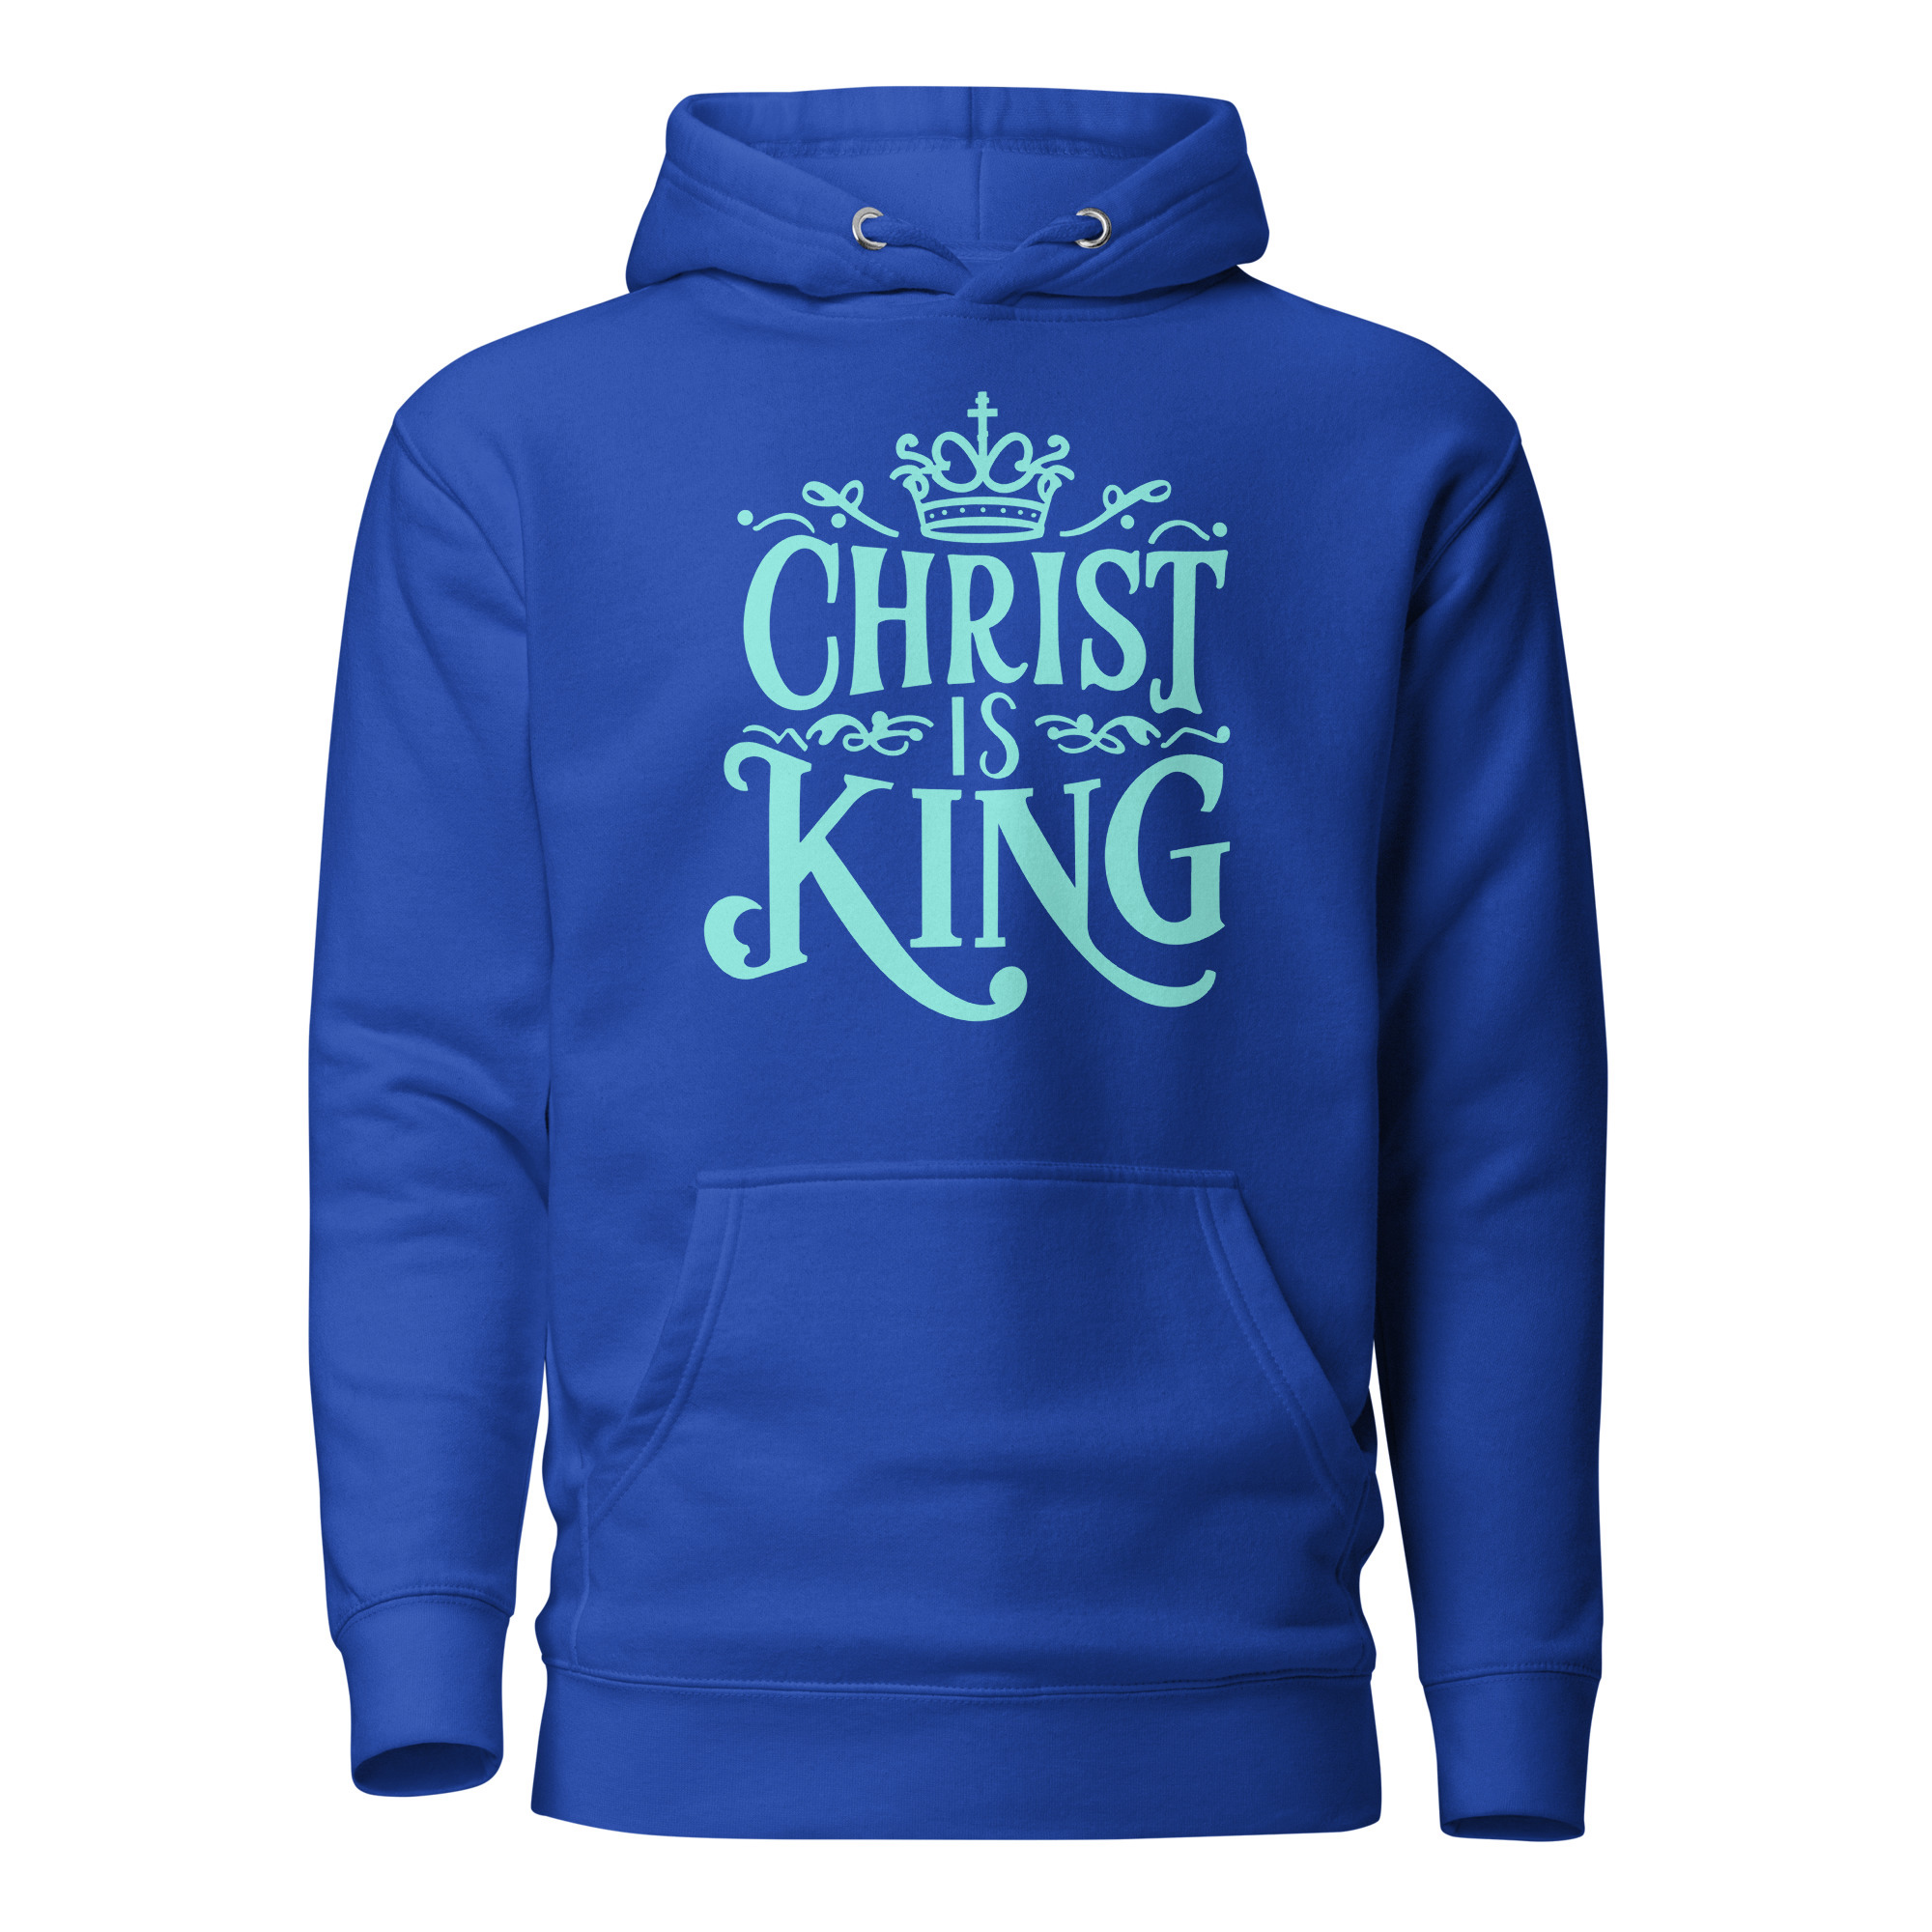 Christ is King 2.0 Hoodie - Team Royal / M